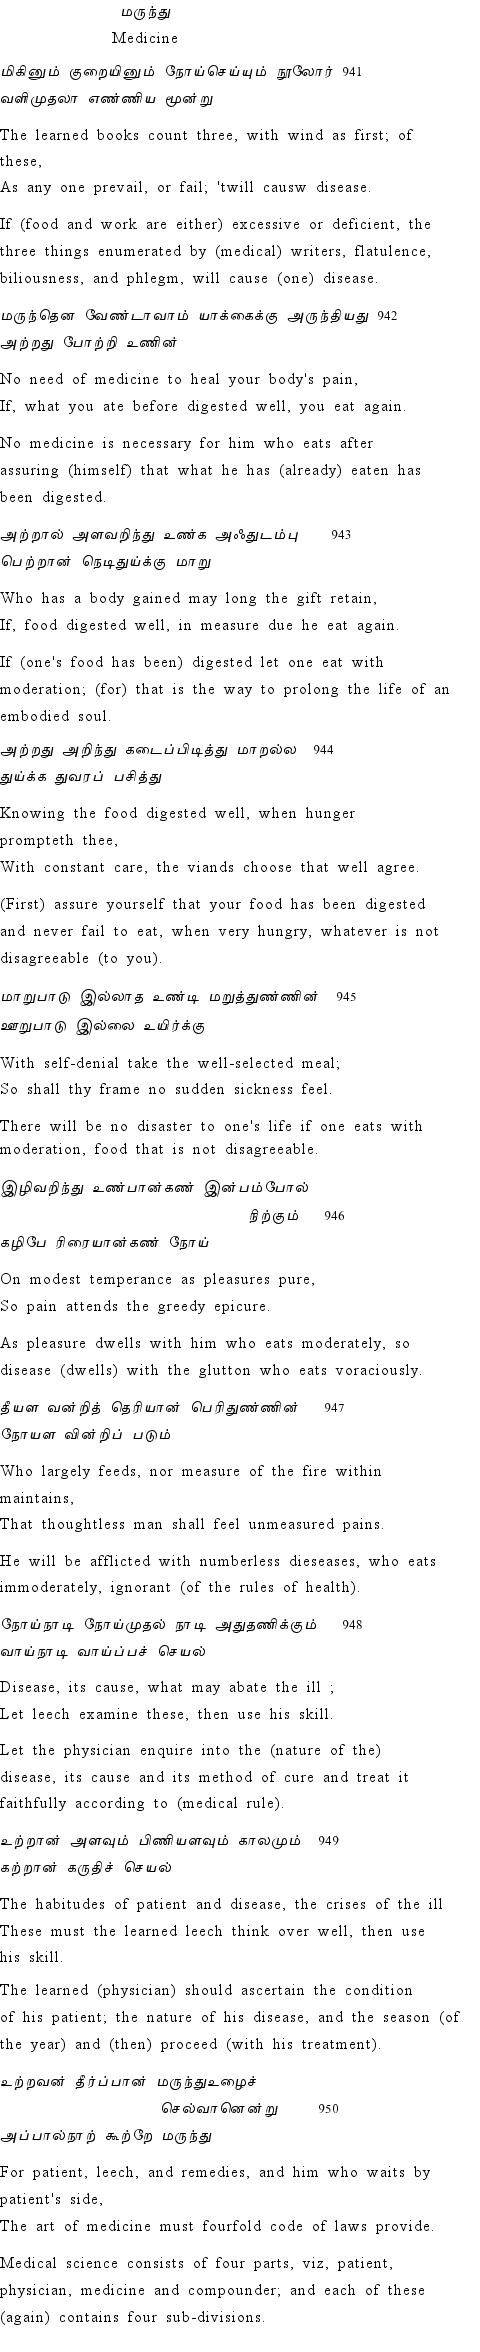 Text of Adhikaram 95